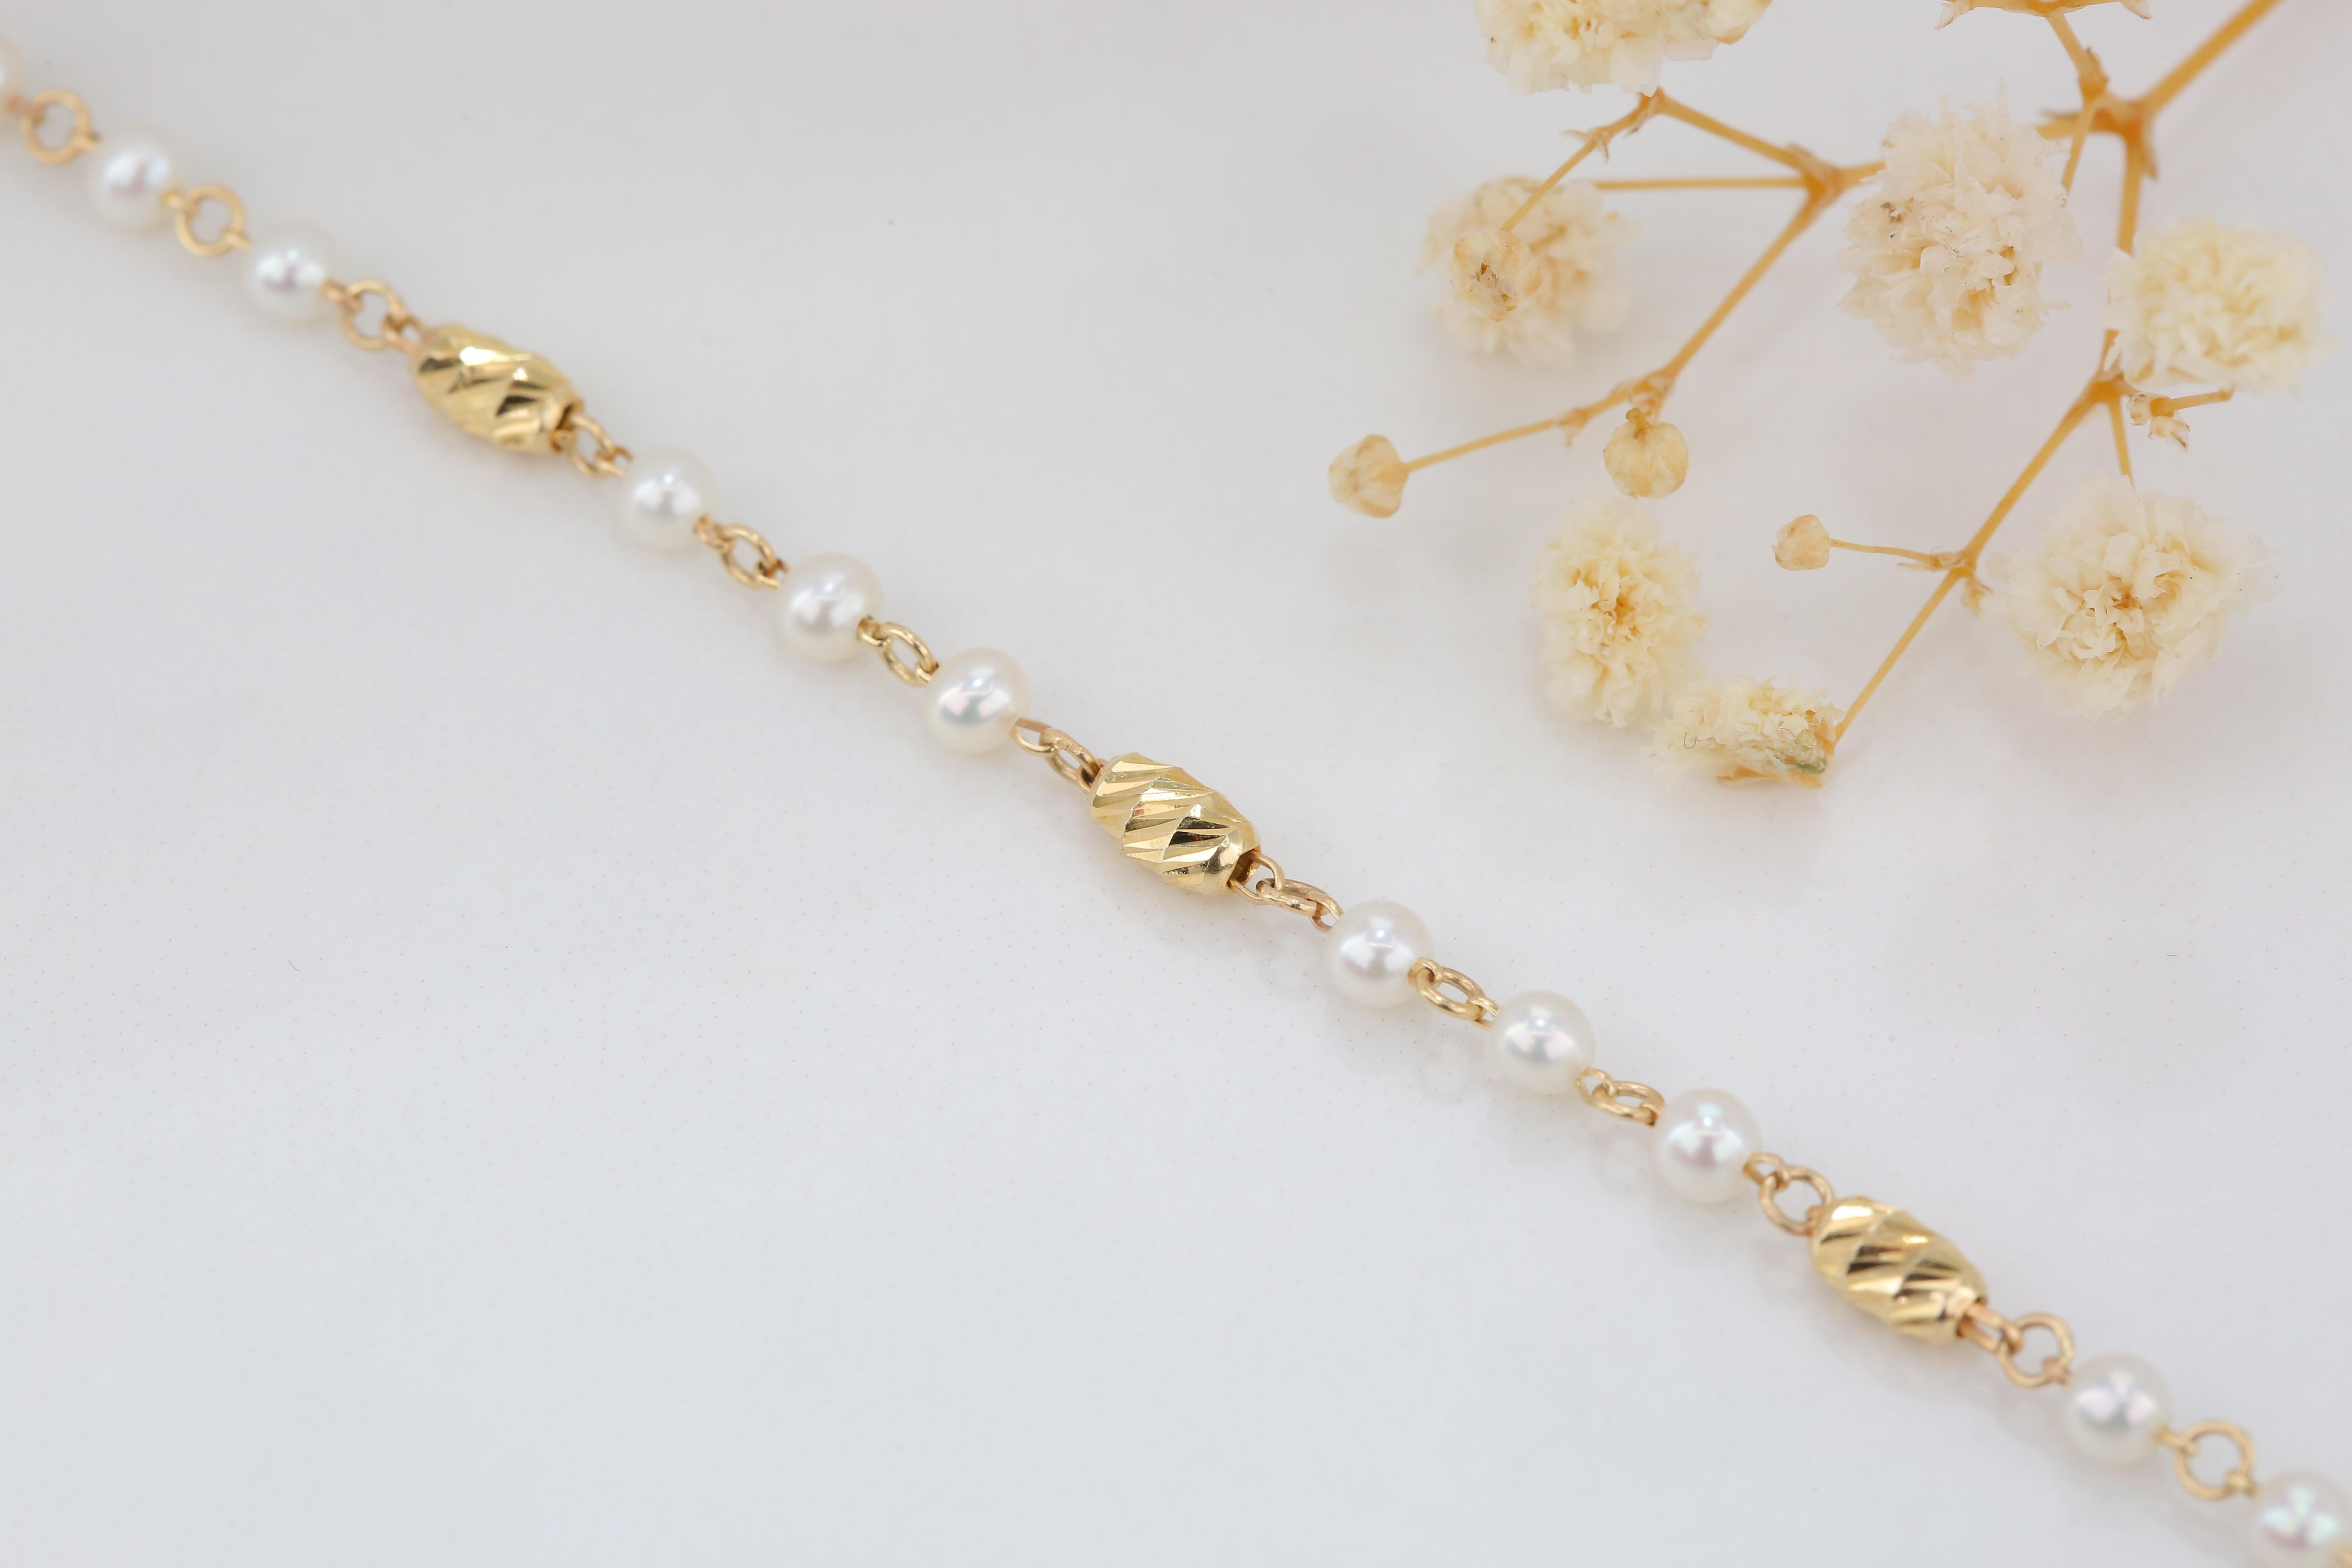 14k gold bracelet with pearls - 14k gold pearl bracelet - Carlos Pearl Bracelet zartes Armband von Händen aus Kette, um den Stein Formen erstellt. Gute Ideen für zierliche Armbänder oder stapelbare Armbänder als Geschenk für sie.

Ich habe Mallorca